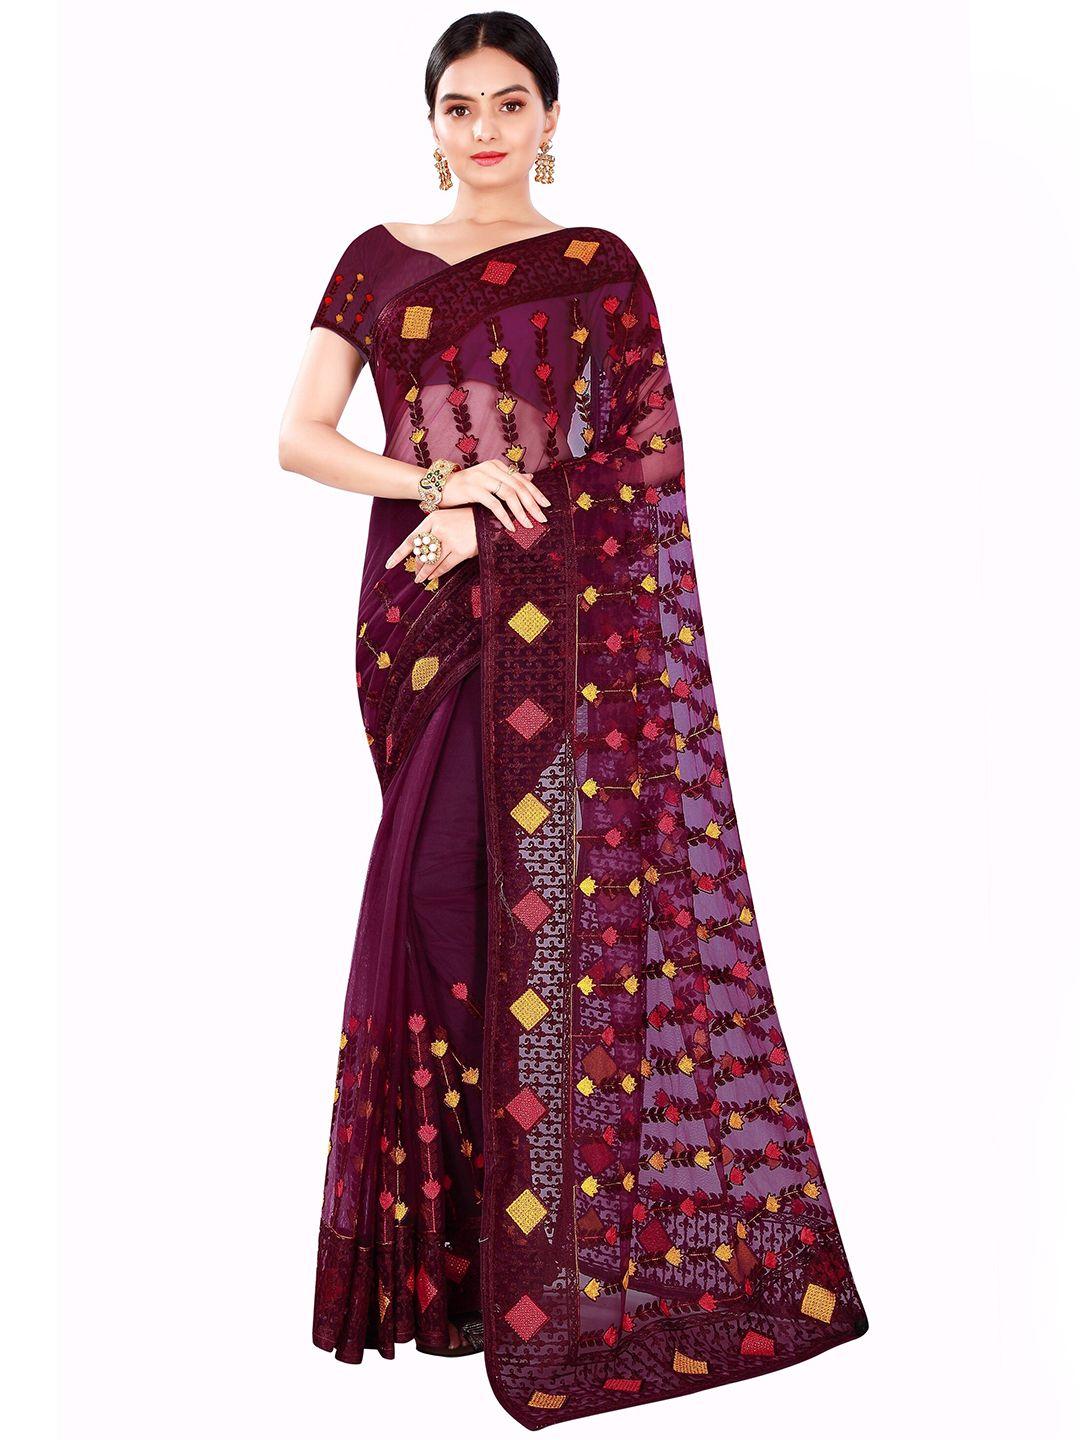 nimayaa purple & yellow embroidered net saree